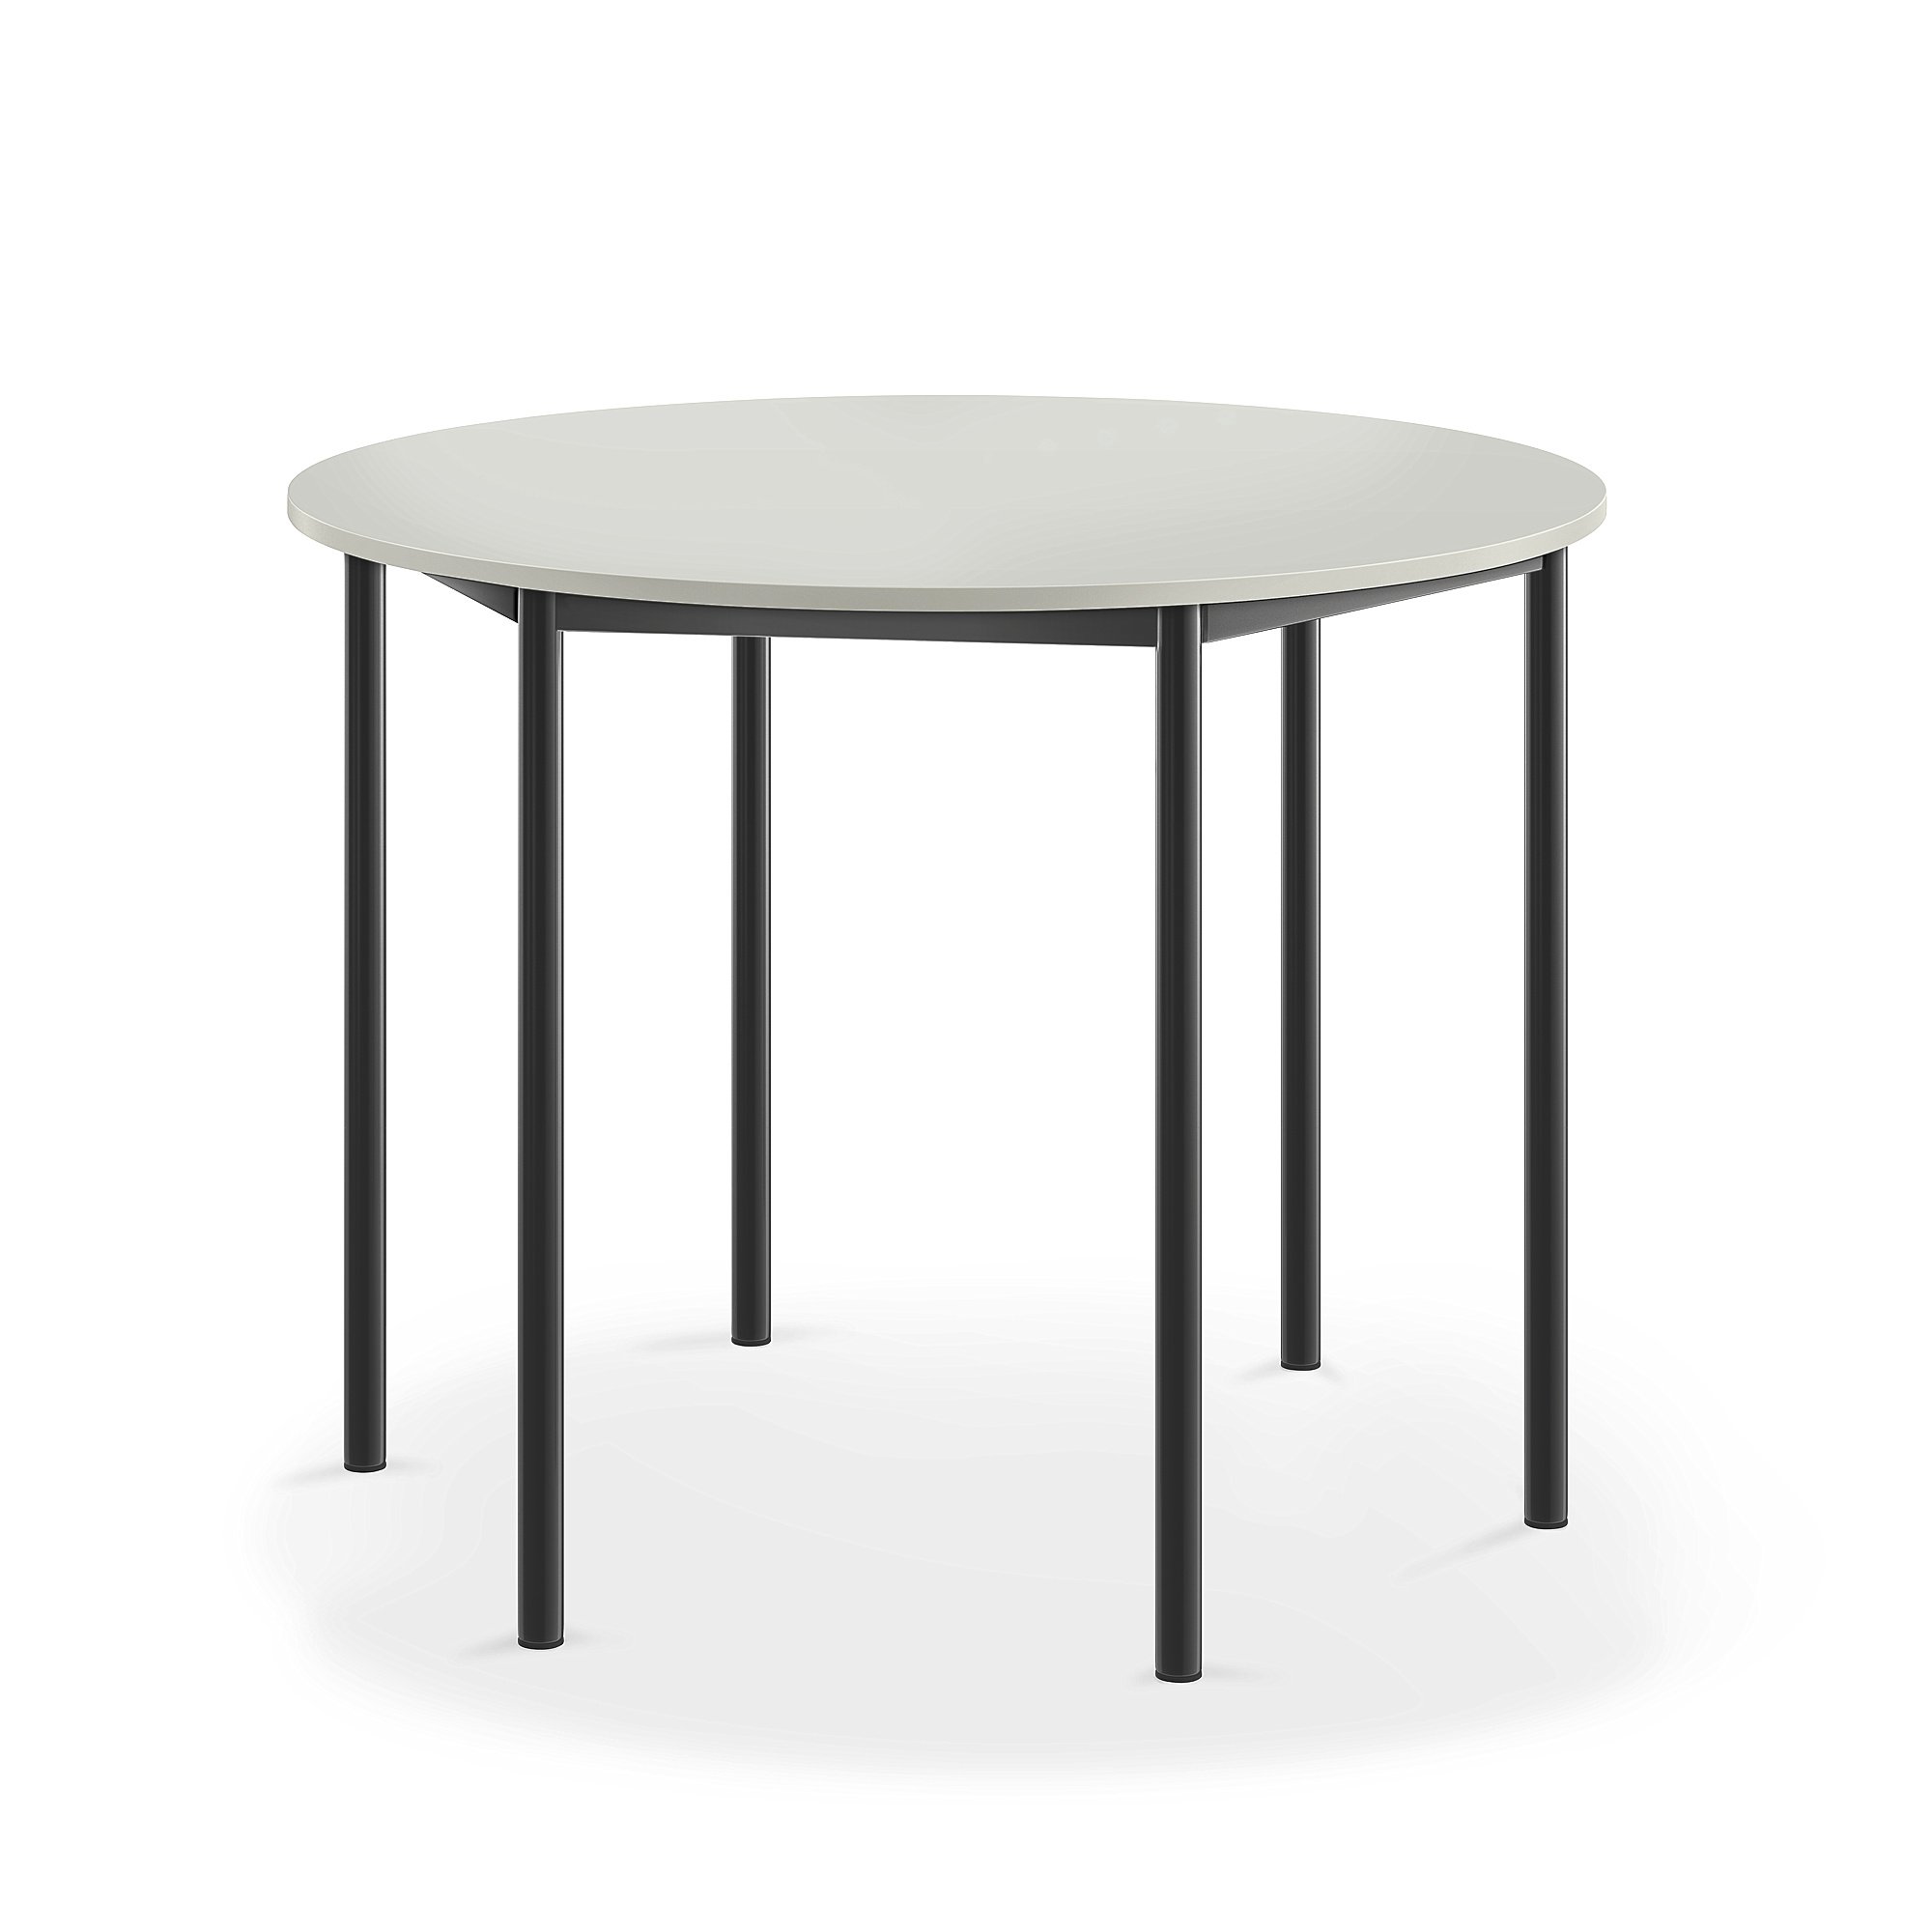 Stůl SONITUS, Ø1200x900 mm, antracitově šedé nohy, HPL deska tlumící hluk, šedá